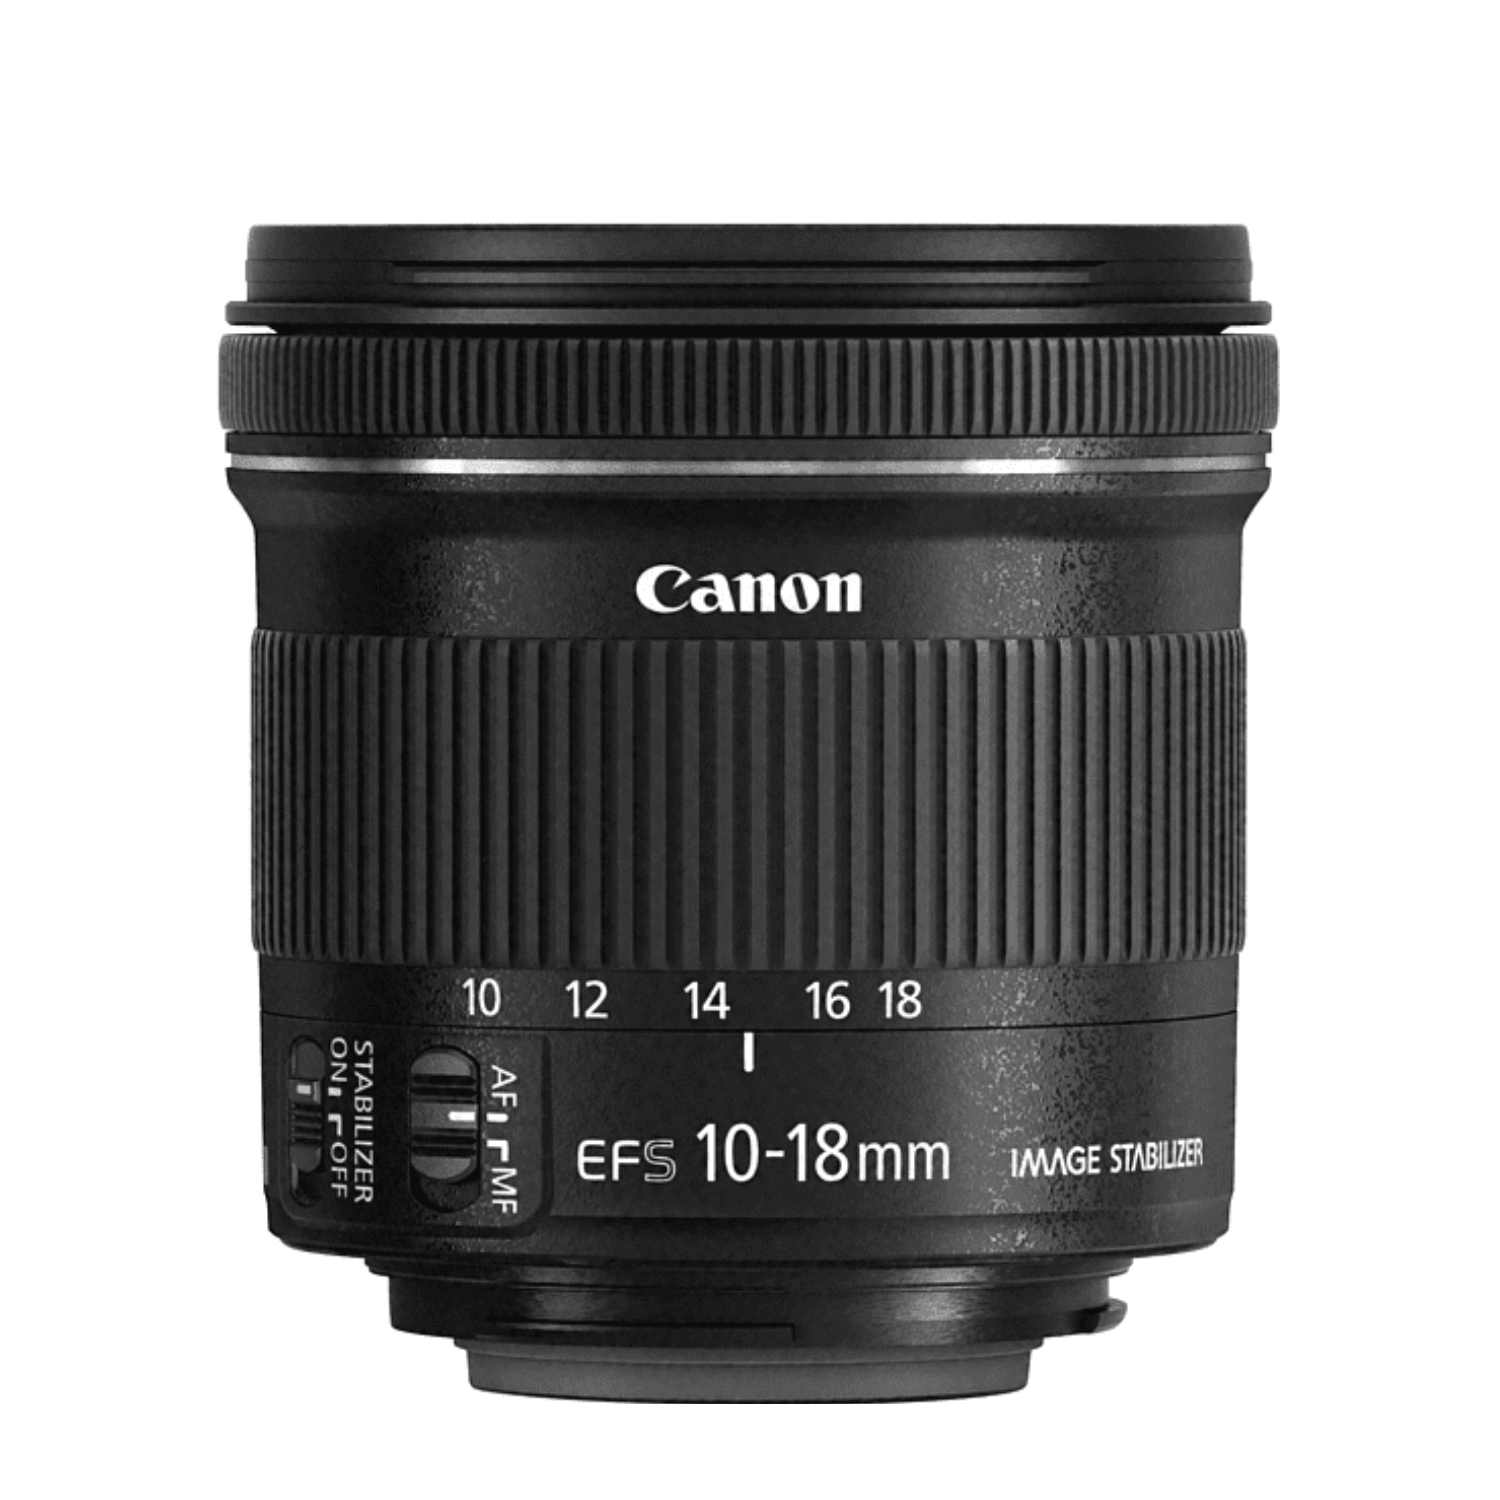 Canon EF-S 10-18mm f4.5-5.6 IS STM -Gar. Canon Italia -Cine Sud è da 46 anni sul mercato! 9519B005